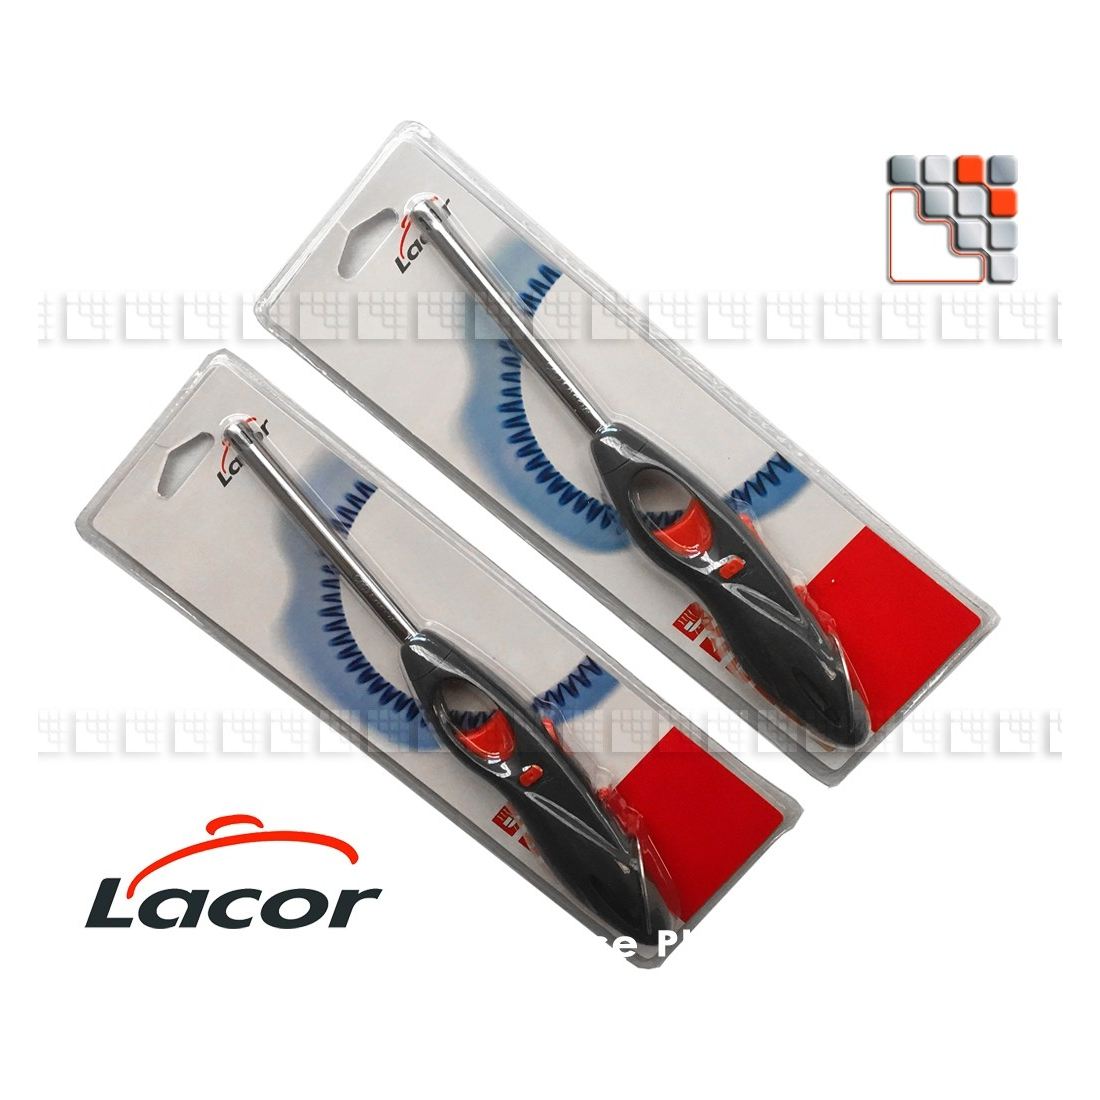 Rechargeable Gas Lighter LACOR L10-68987 LACOR® Gas Accessories